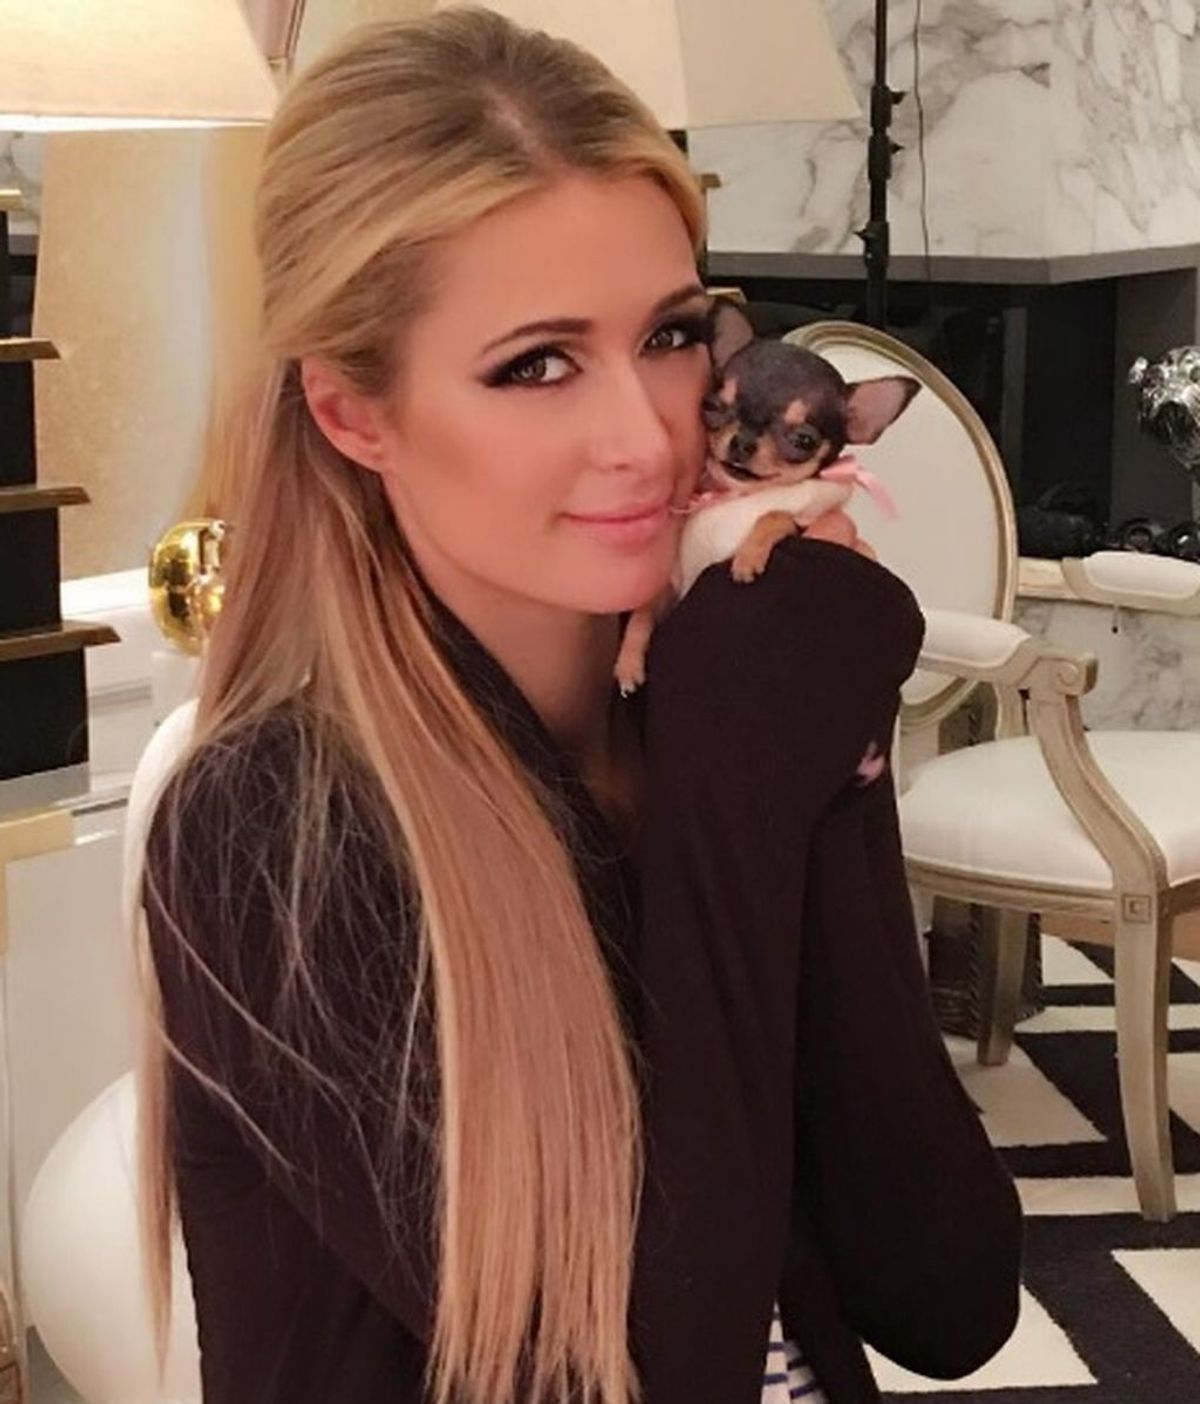 Ha costado 8.000 dólares y mide como tu mano: el nuevo chihuahua de Paris Hilton